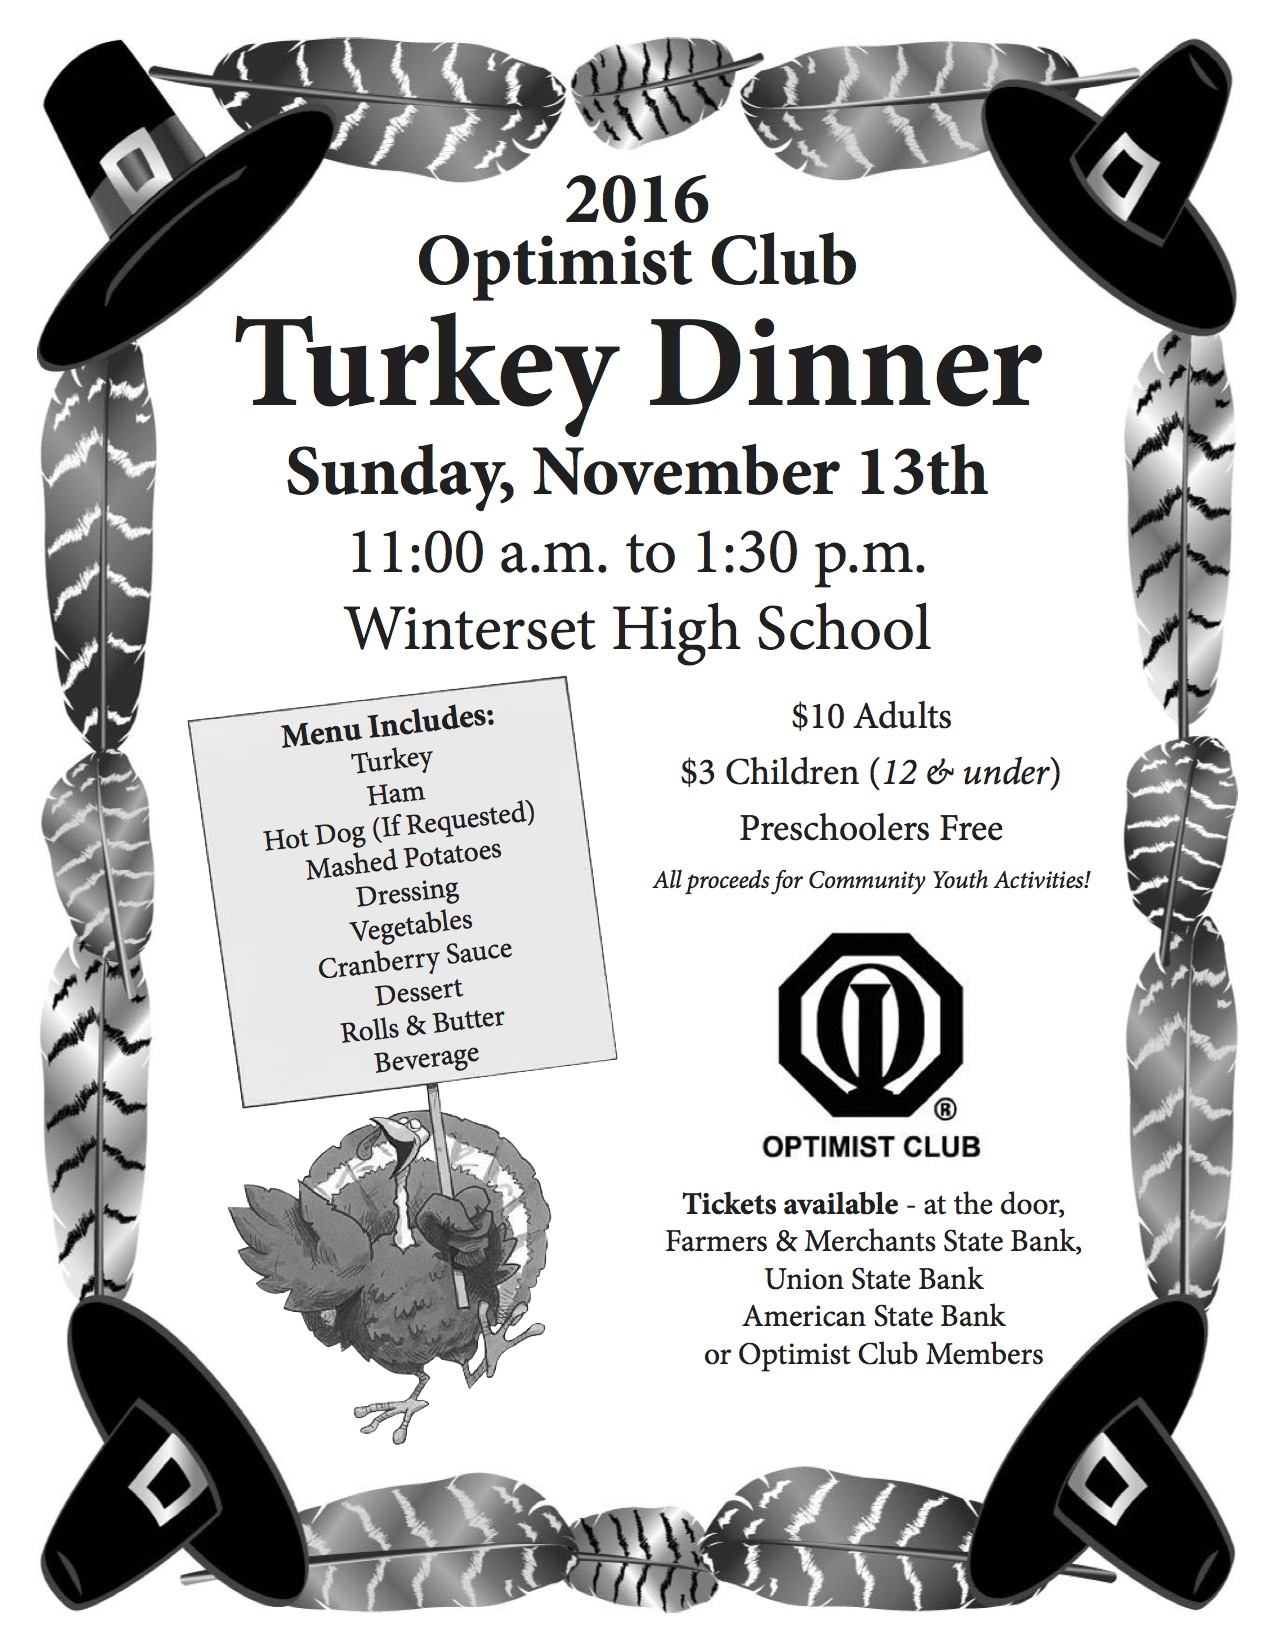 Optimist Club 2016 Turkey Dinner